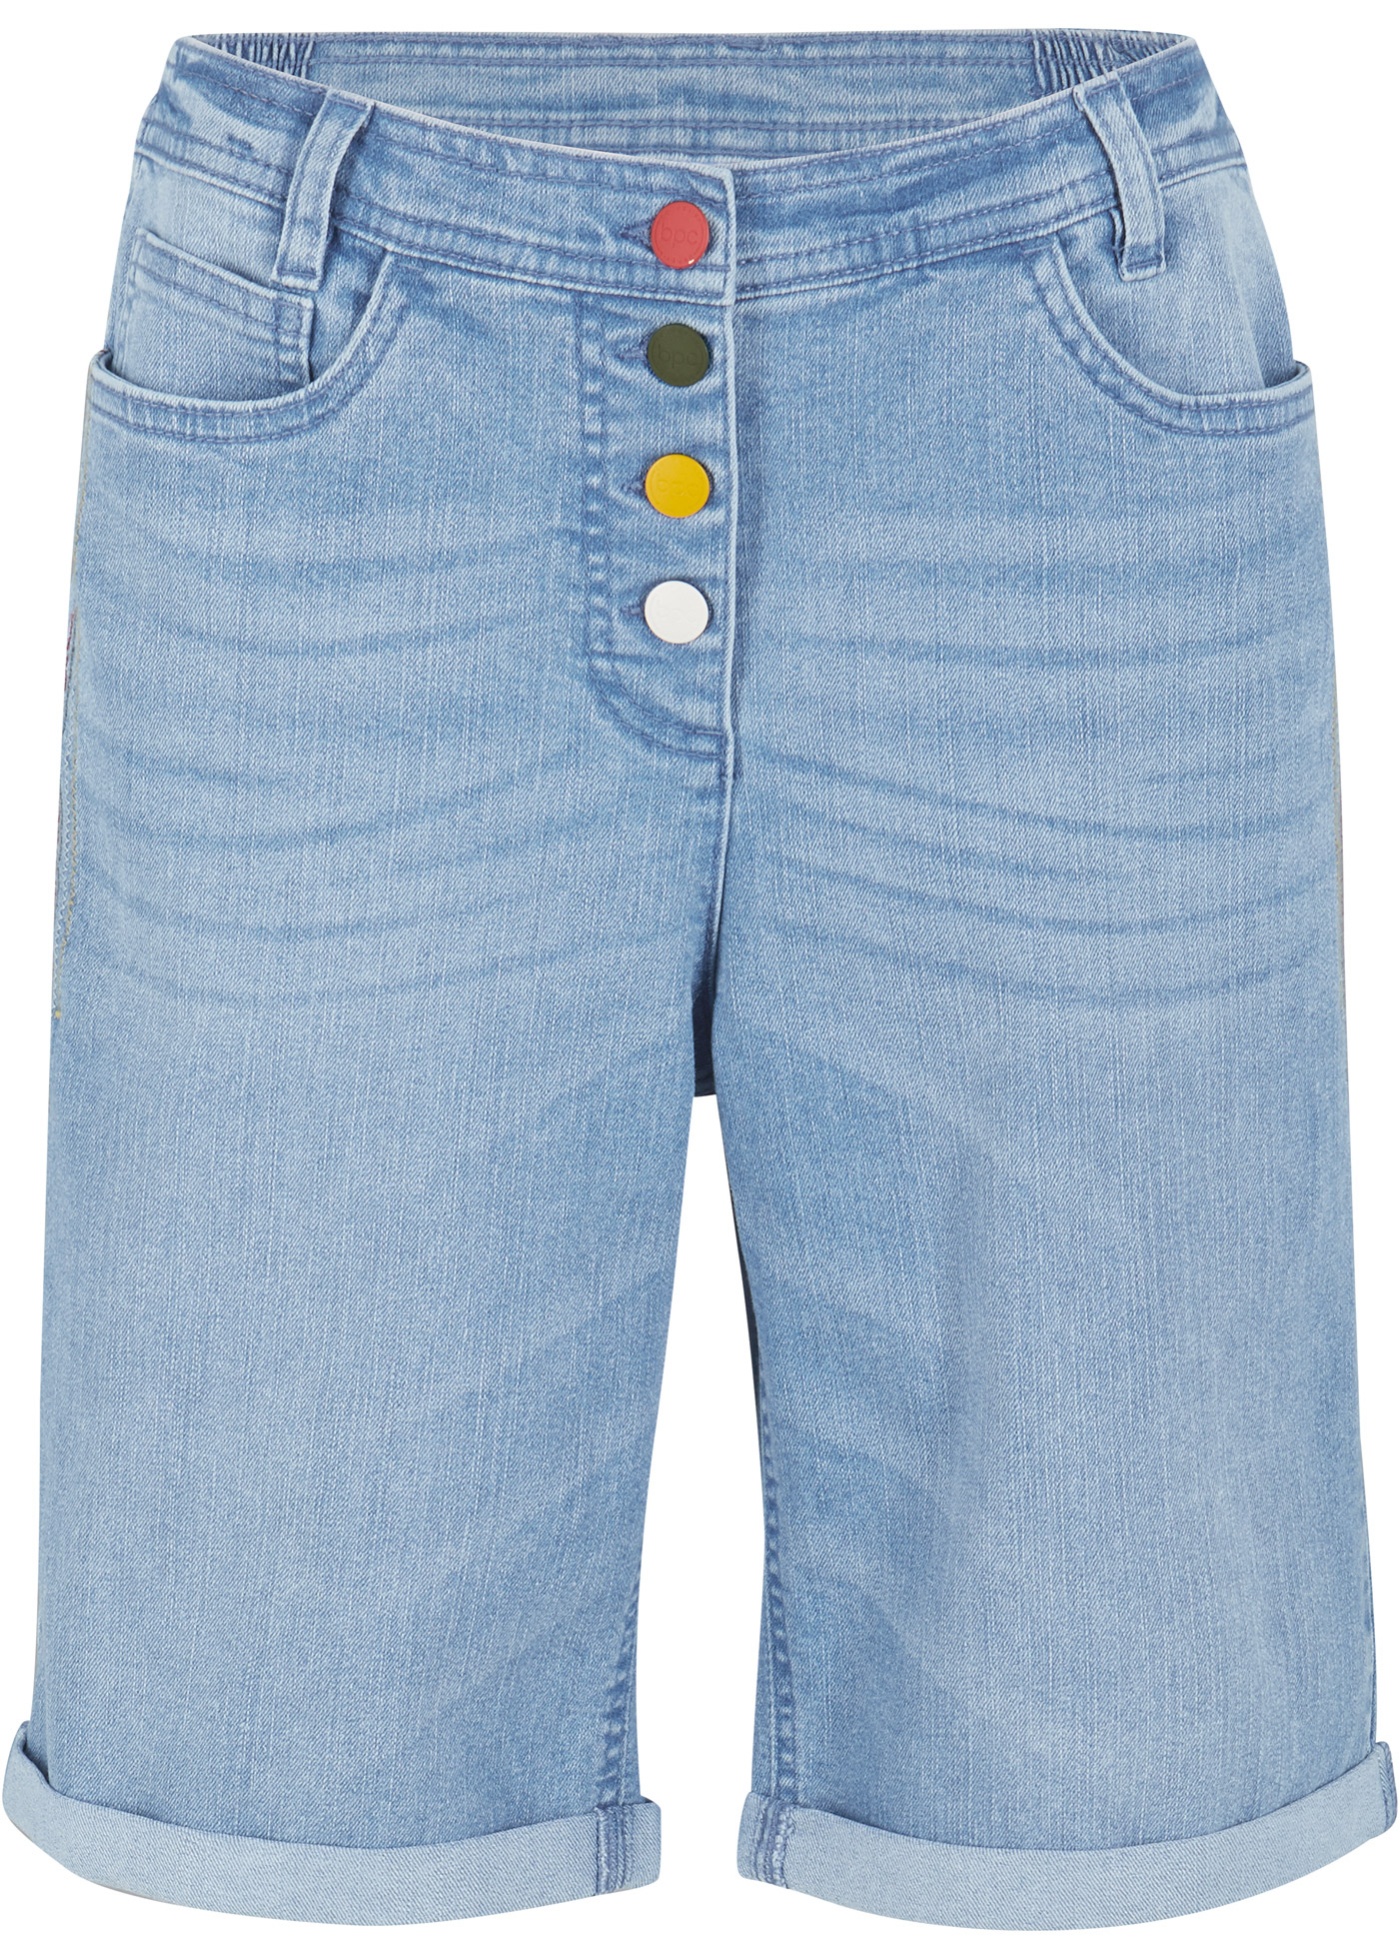 Komfort-Stretch-Jeans-Bermuda mit Stickerei und Bequembund günstig online kaufen